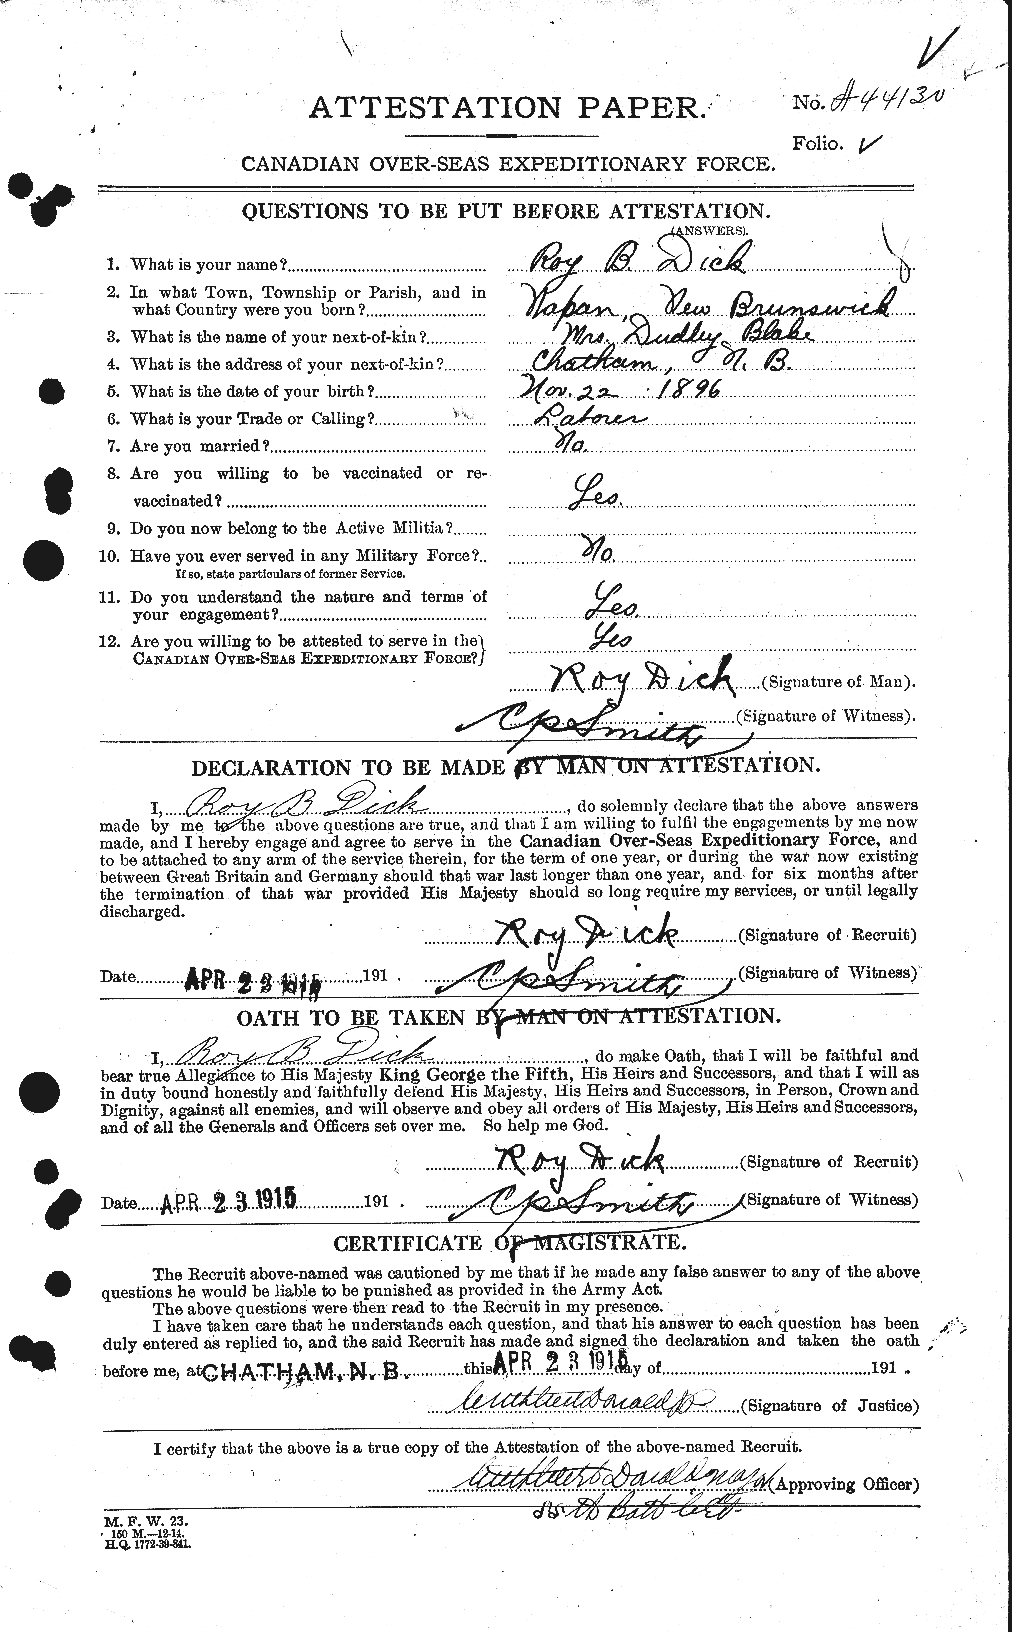 Dossiers du Personnel de la Première Guerre mondiale - CEC 290555a